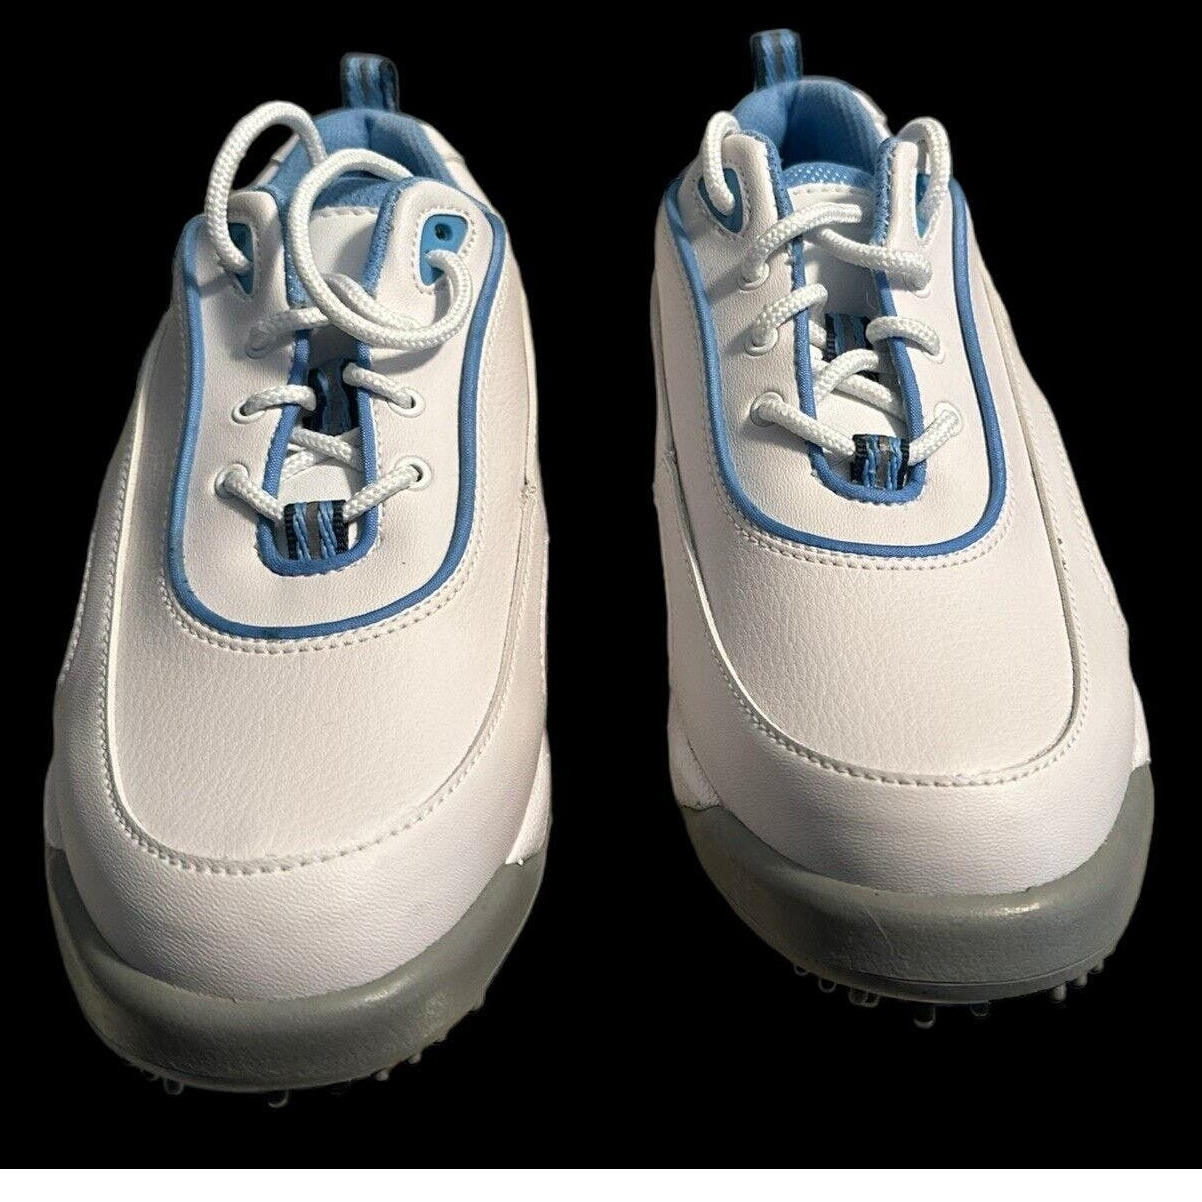 Footjoy Womans Golf Shoes Size 7.5